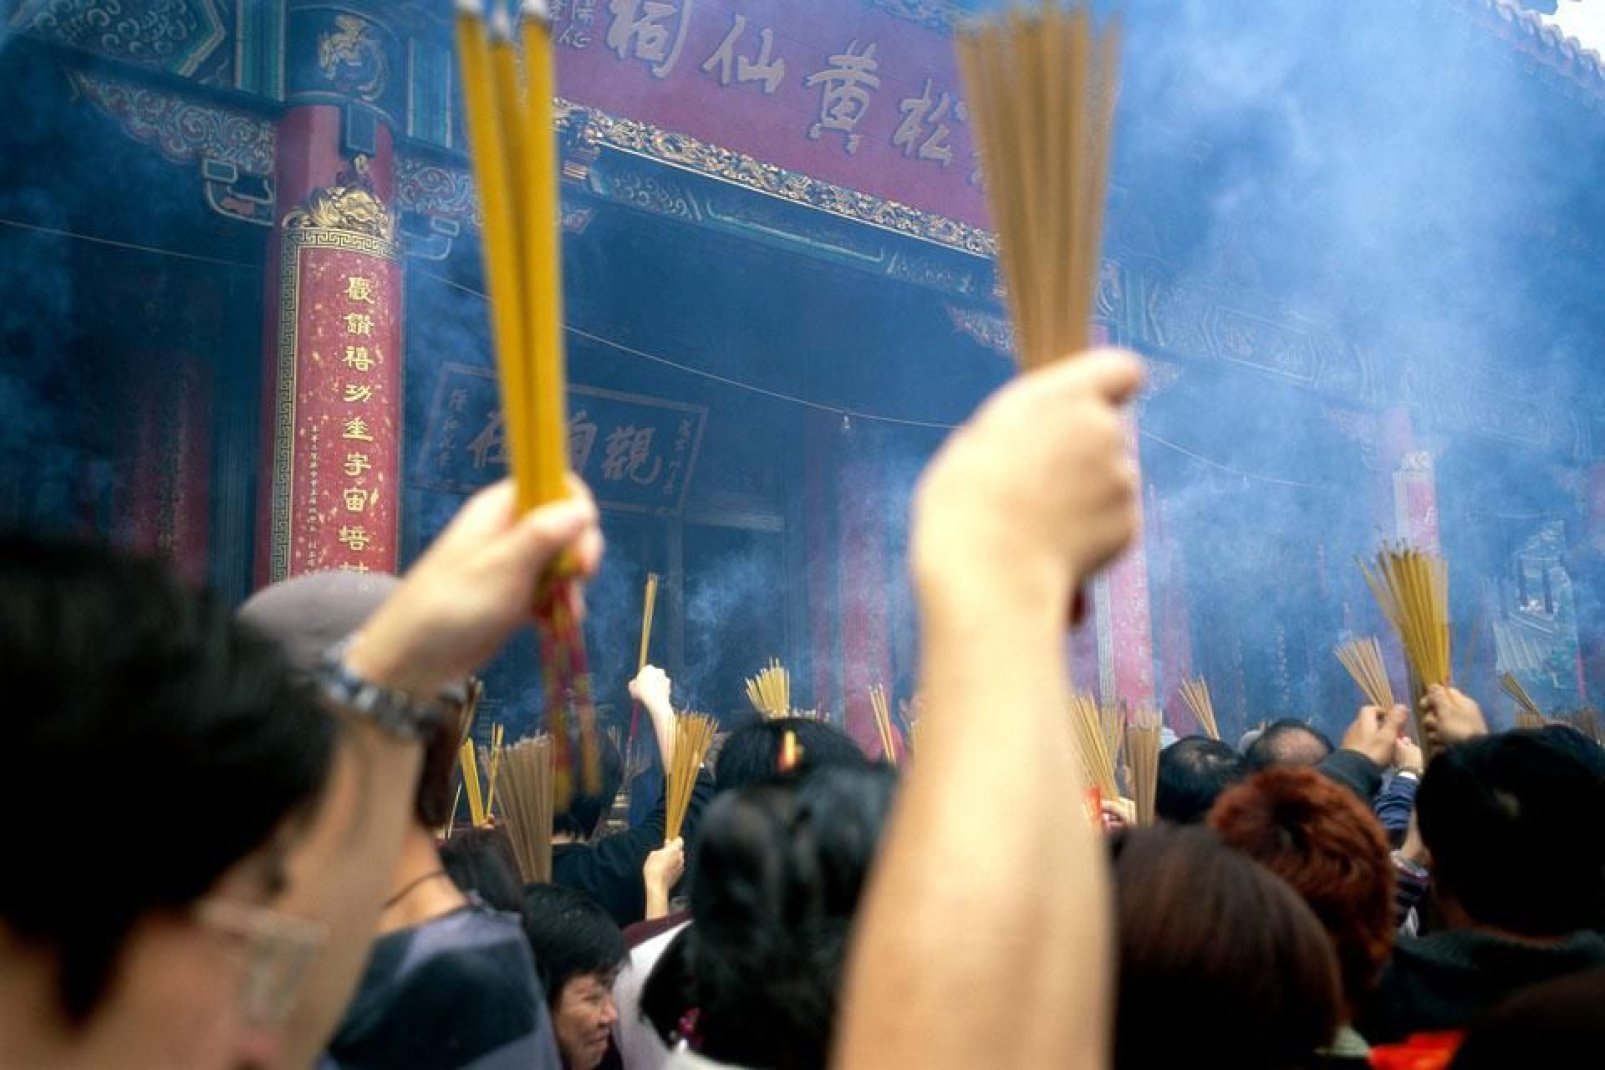 Questa cerimonia religiosa si svolge nel tempio di Wong Tai Sin, sulla penisola di Kowloon.